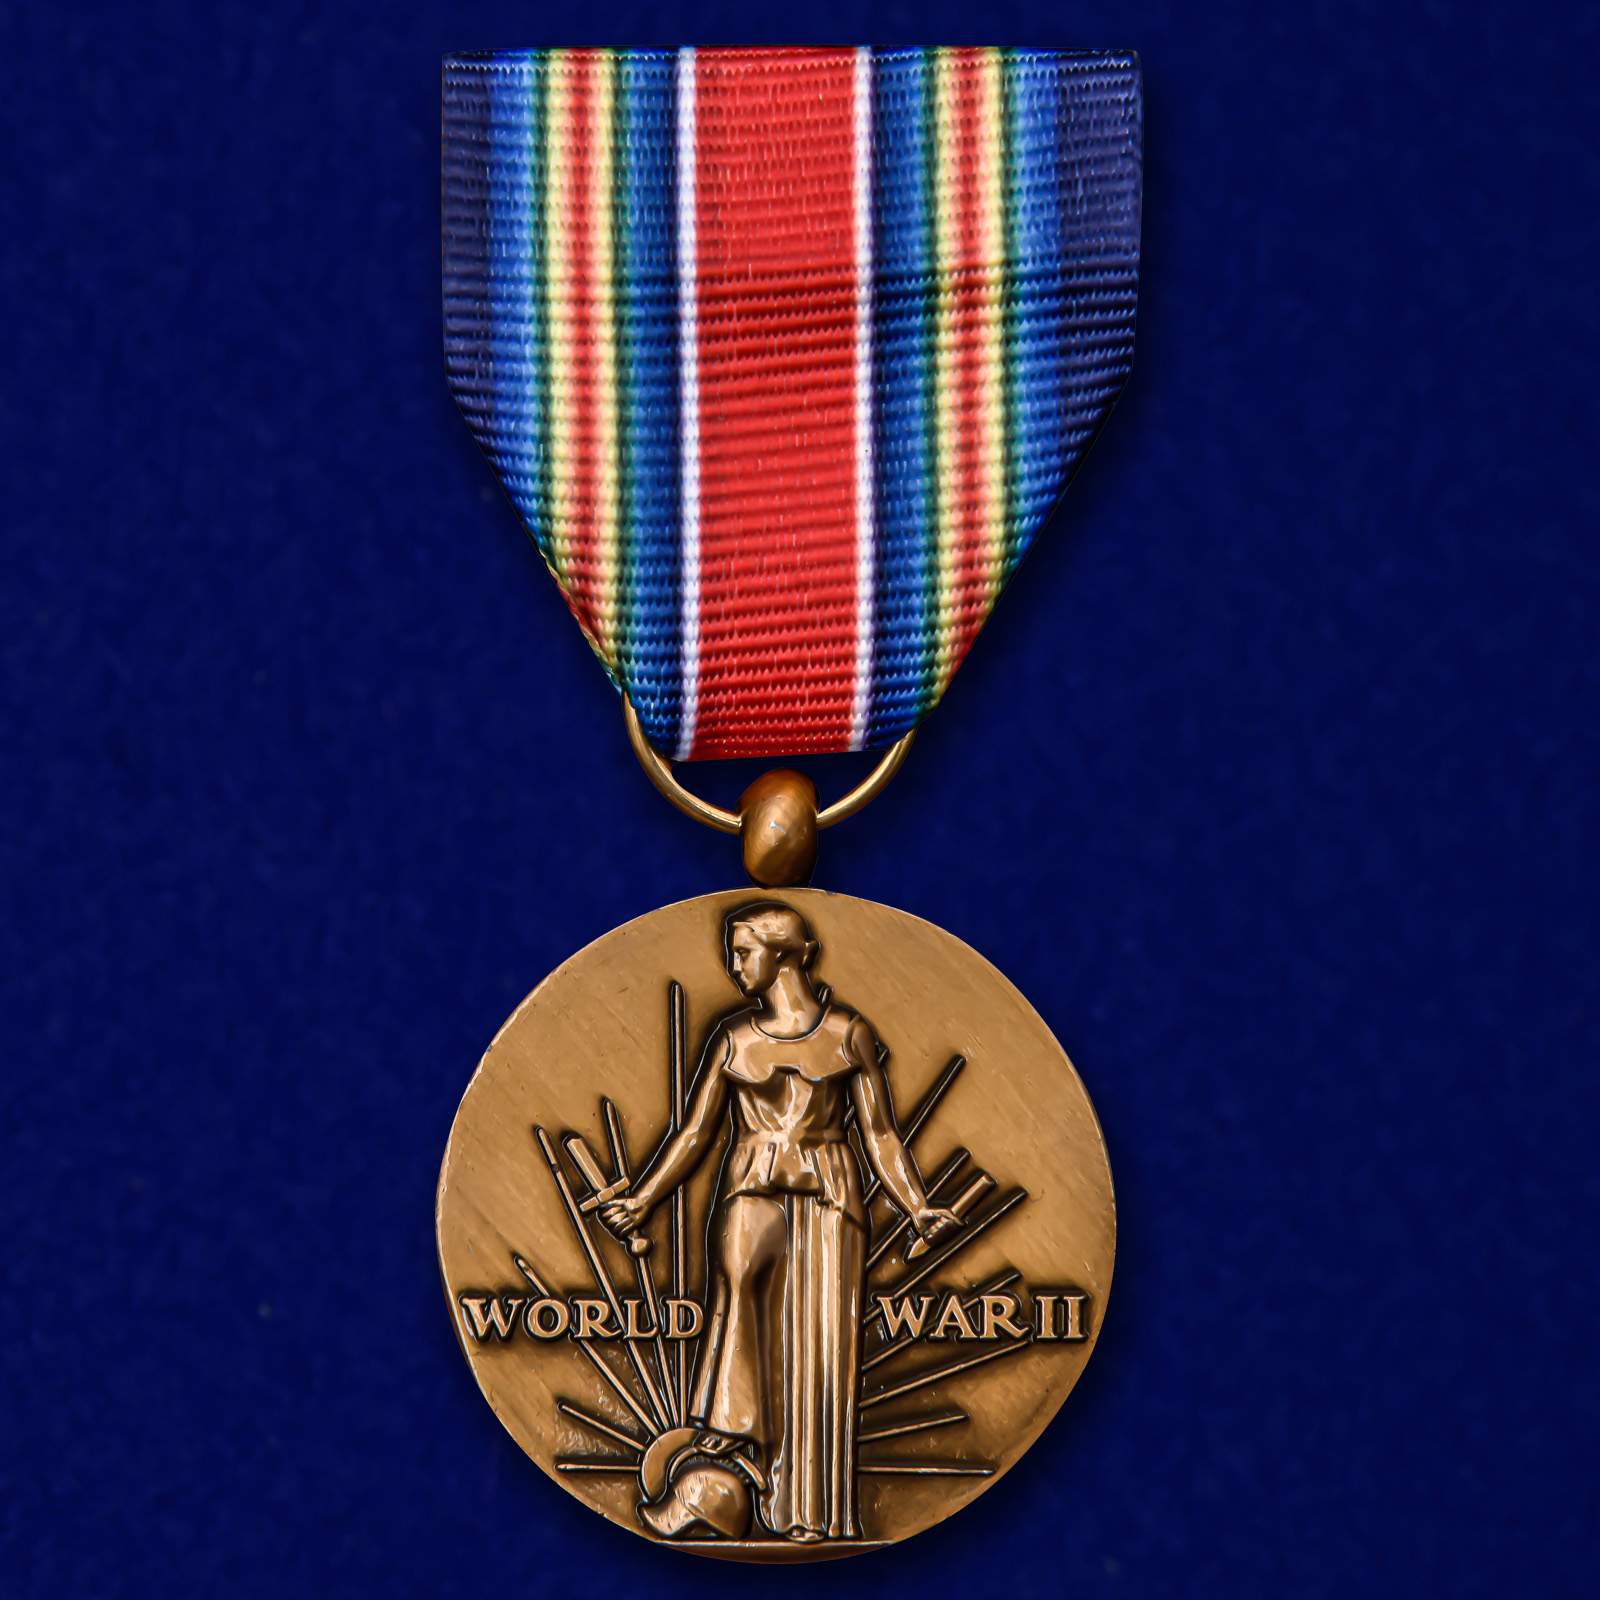 Американская латунная медаль "За победу во II Мировой войне" 